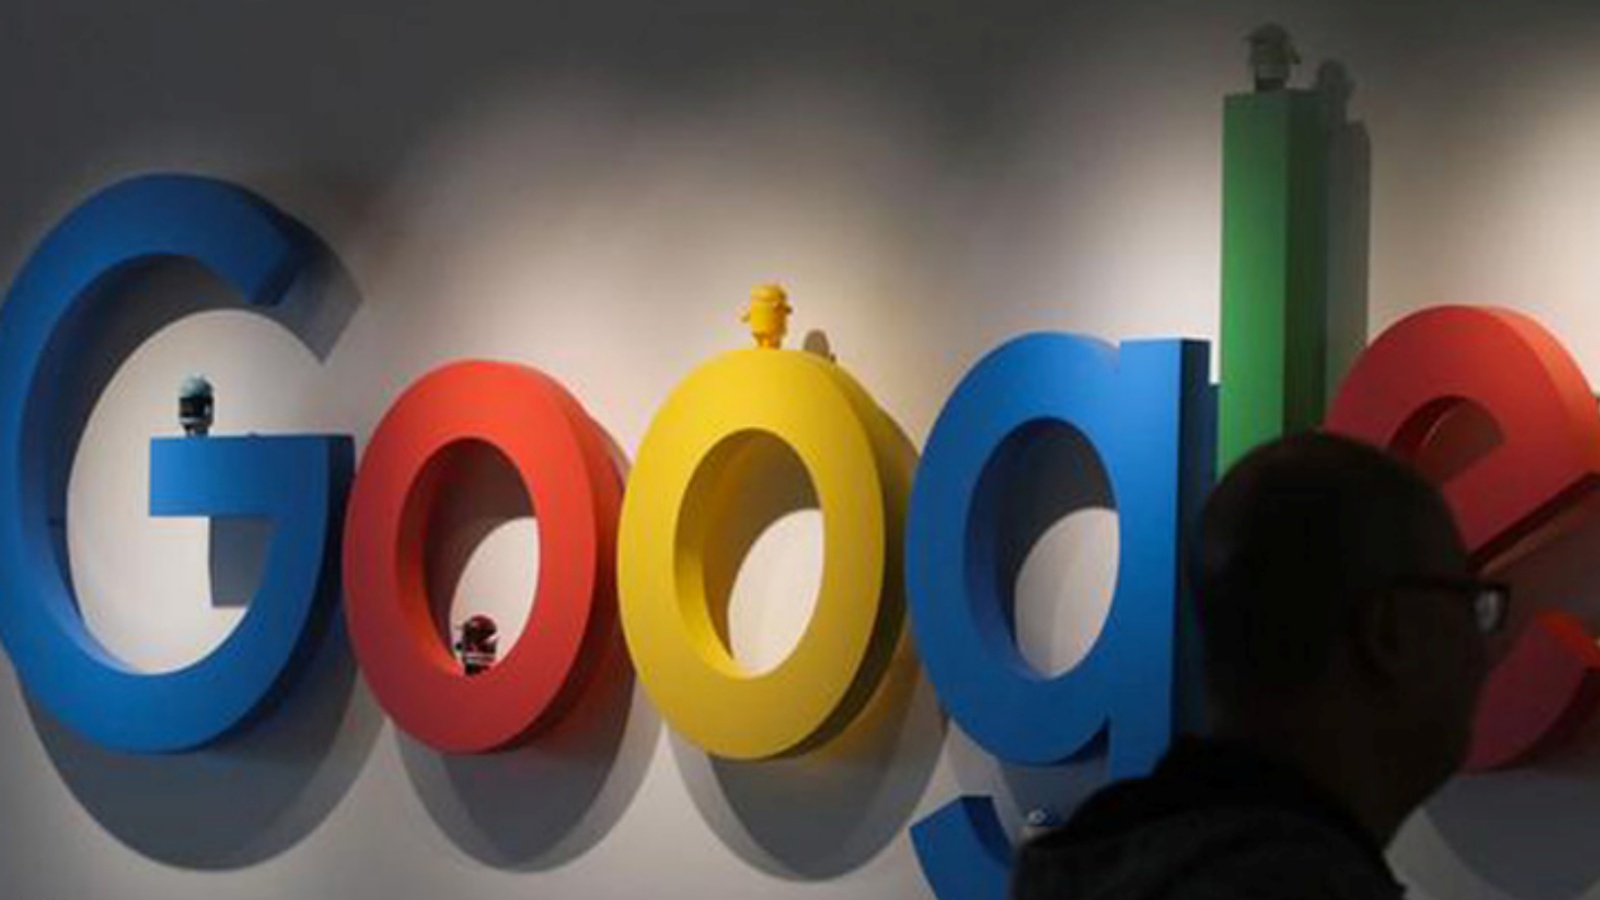 ألفابت، شركة غوغل الأم، في الصيف الفائت أضعف نمو في الإيرادات منذ عام 2013